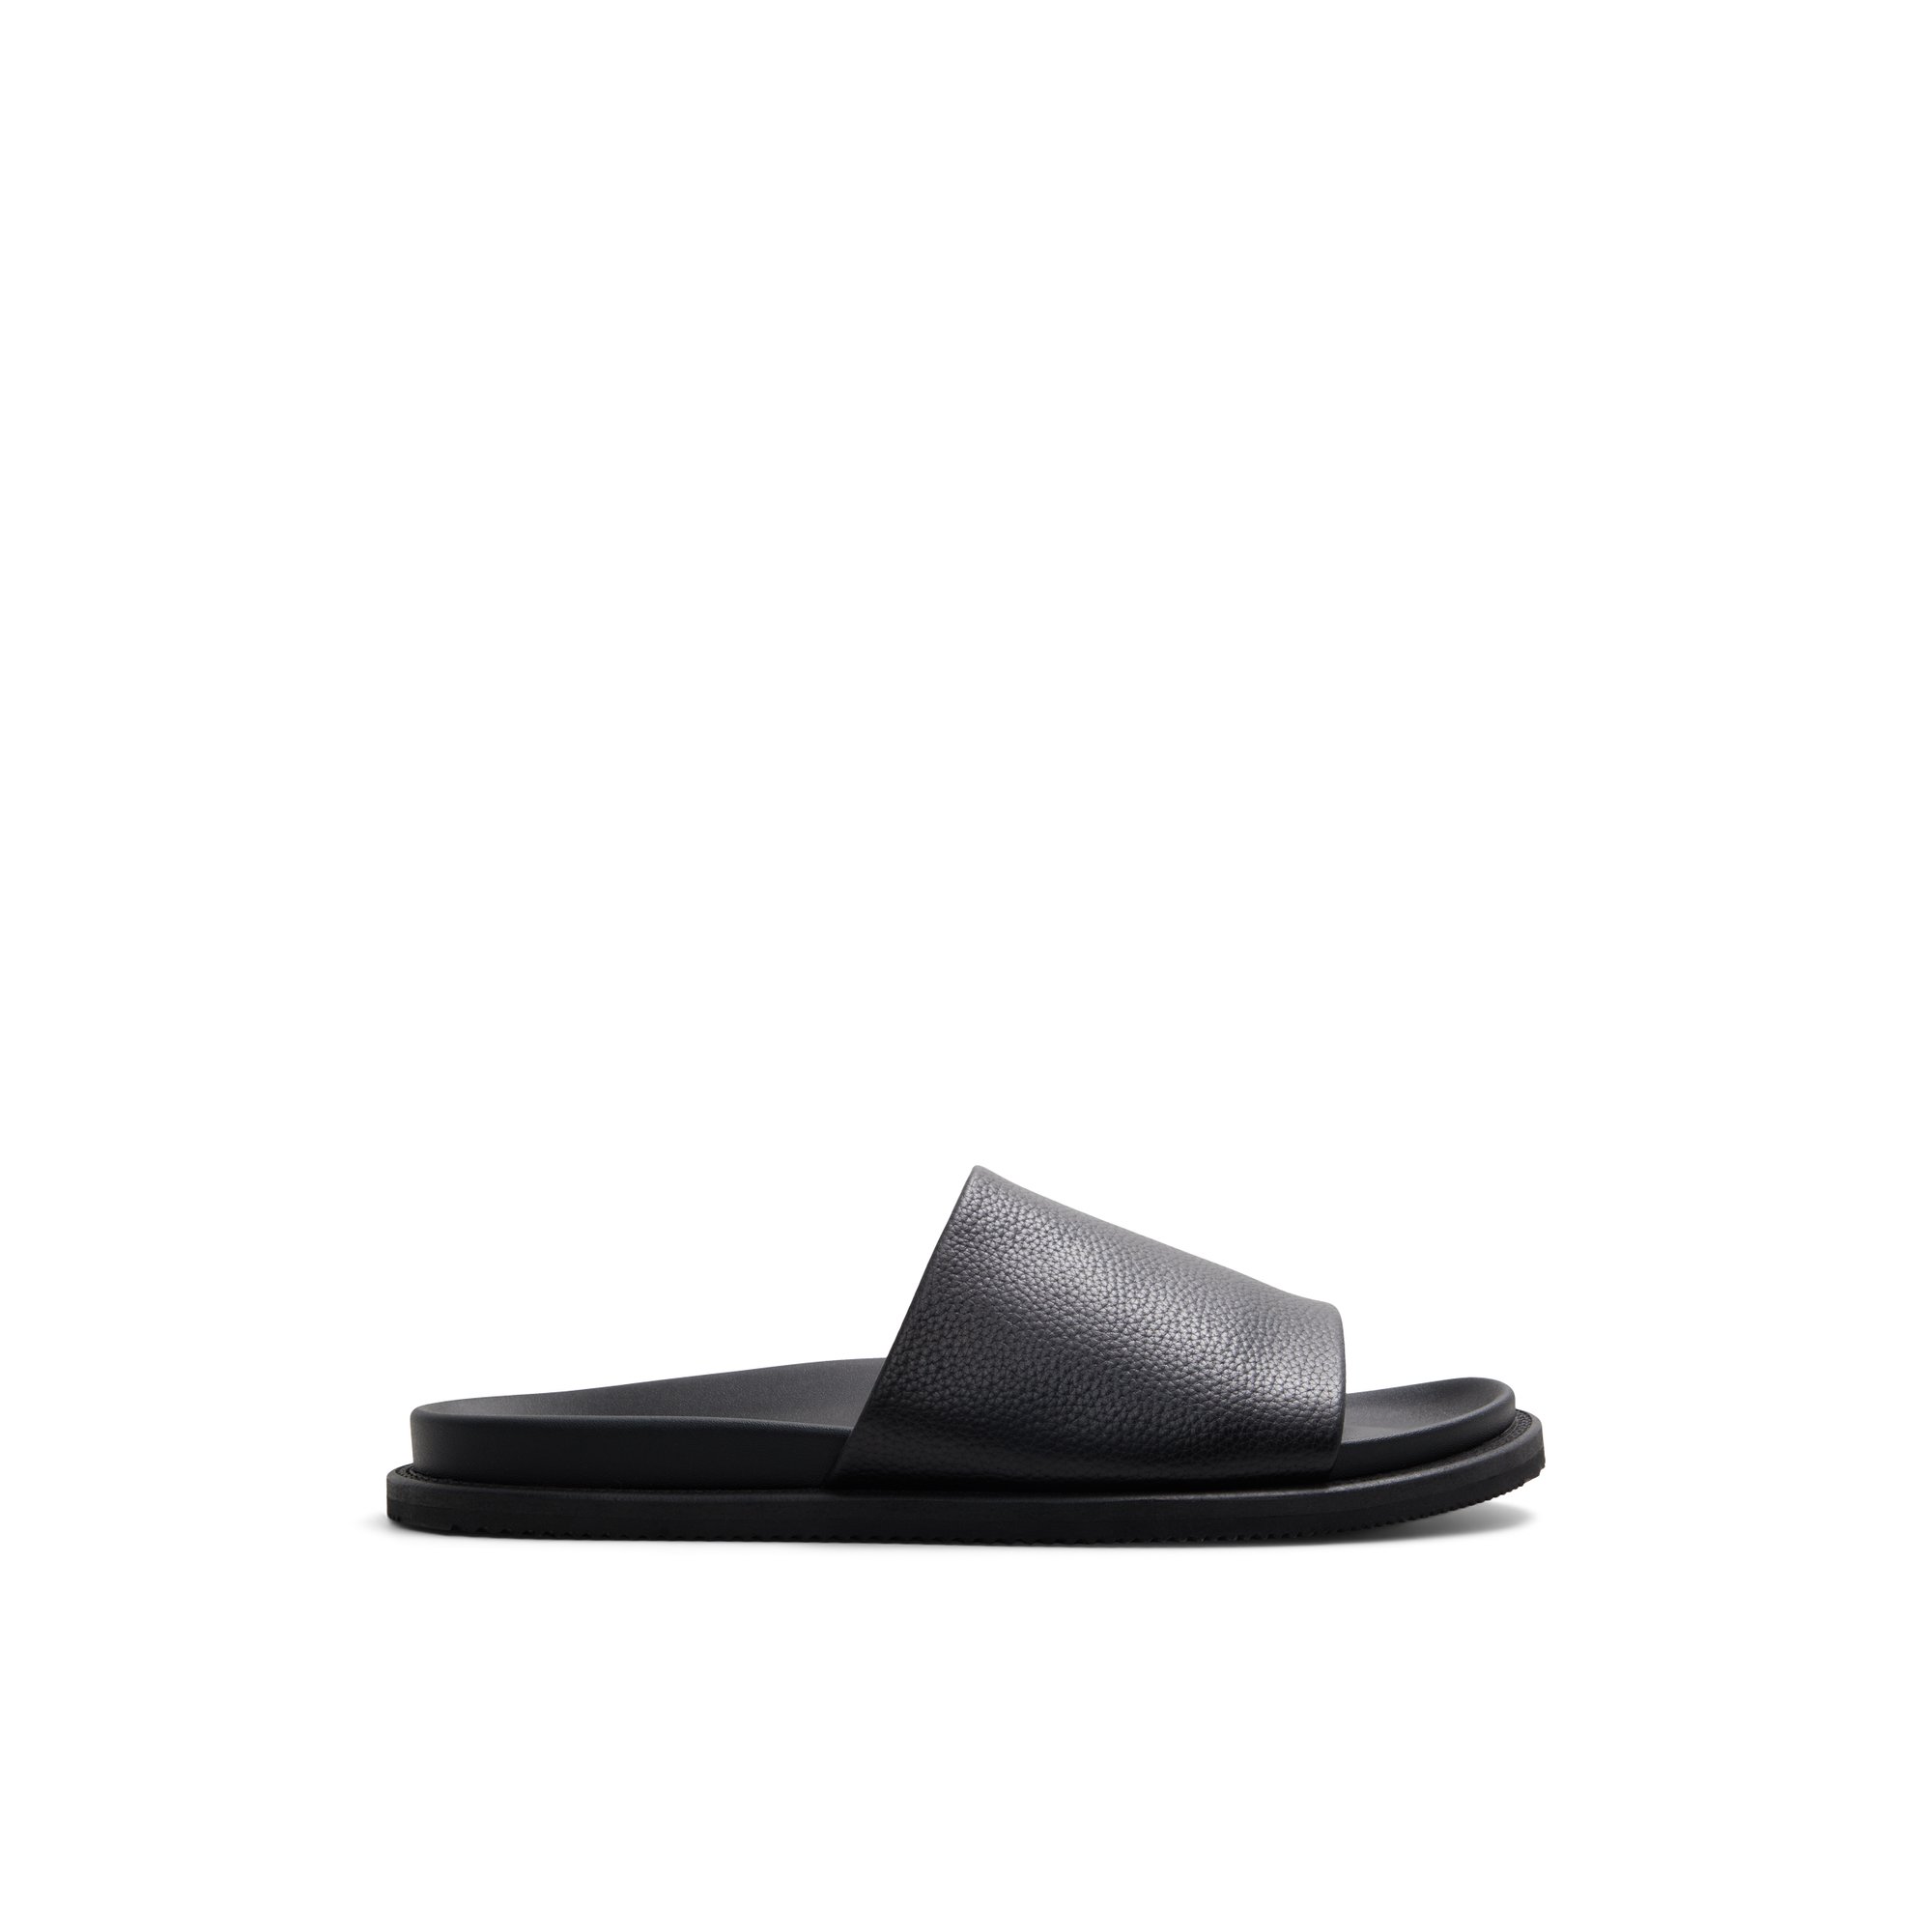 ALDO Gentslide - Men's Slide Sandals - Black